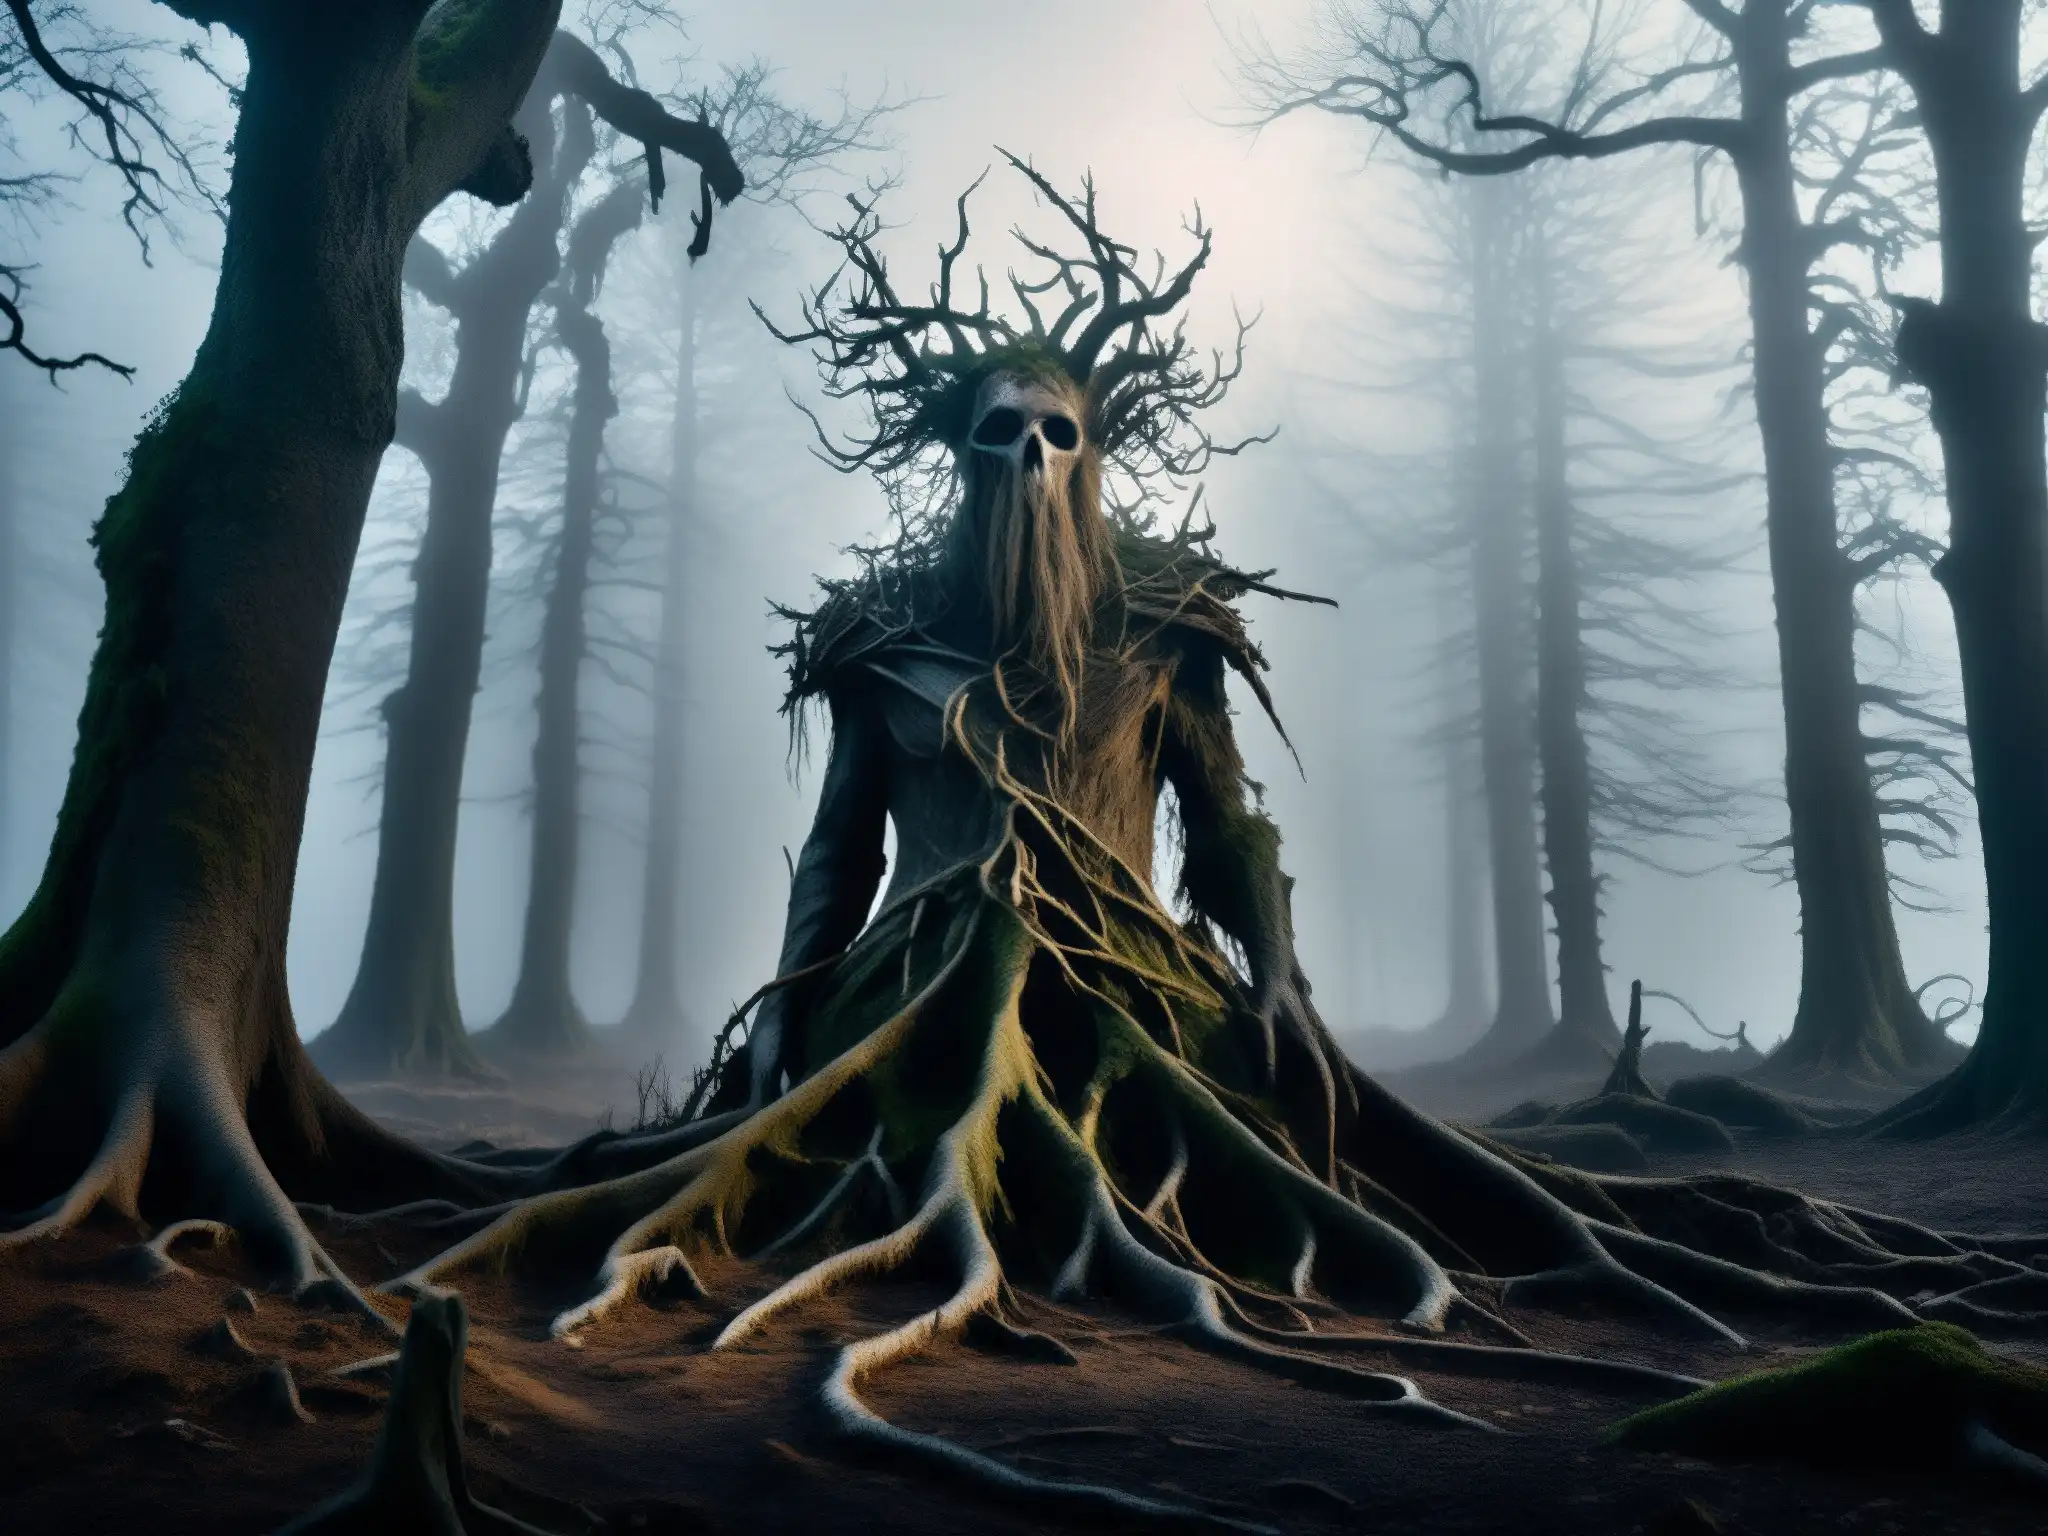 Un bosque envuelto en niebla y misterio, con árboles retorcidos y figuras fantasmales